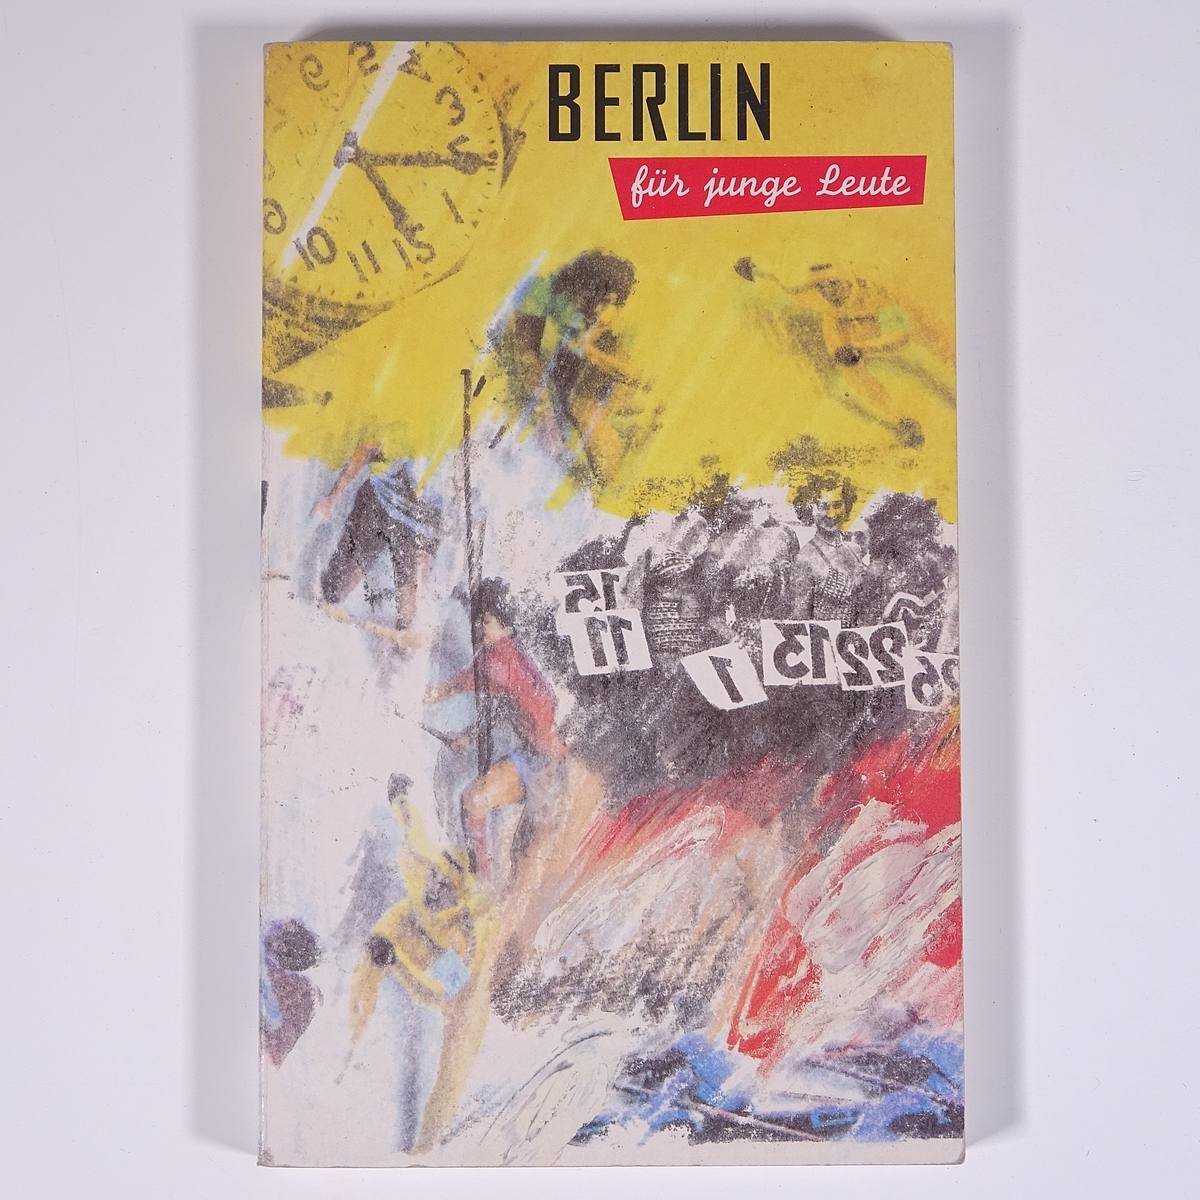 【ドイツ語洋書】 BERLIN fur junge Leute 若者のためのベルリン 1991 単行本 ガイドブック 旅行 観光 ドイツ_画像1